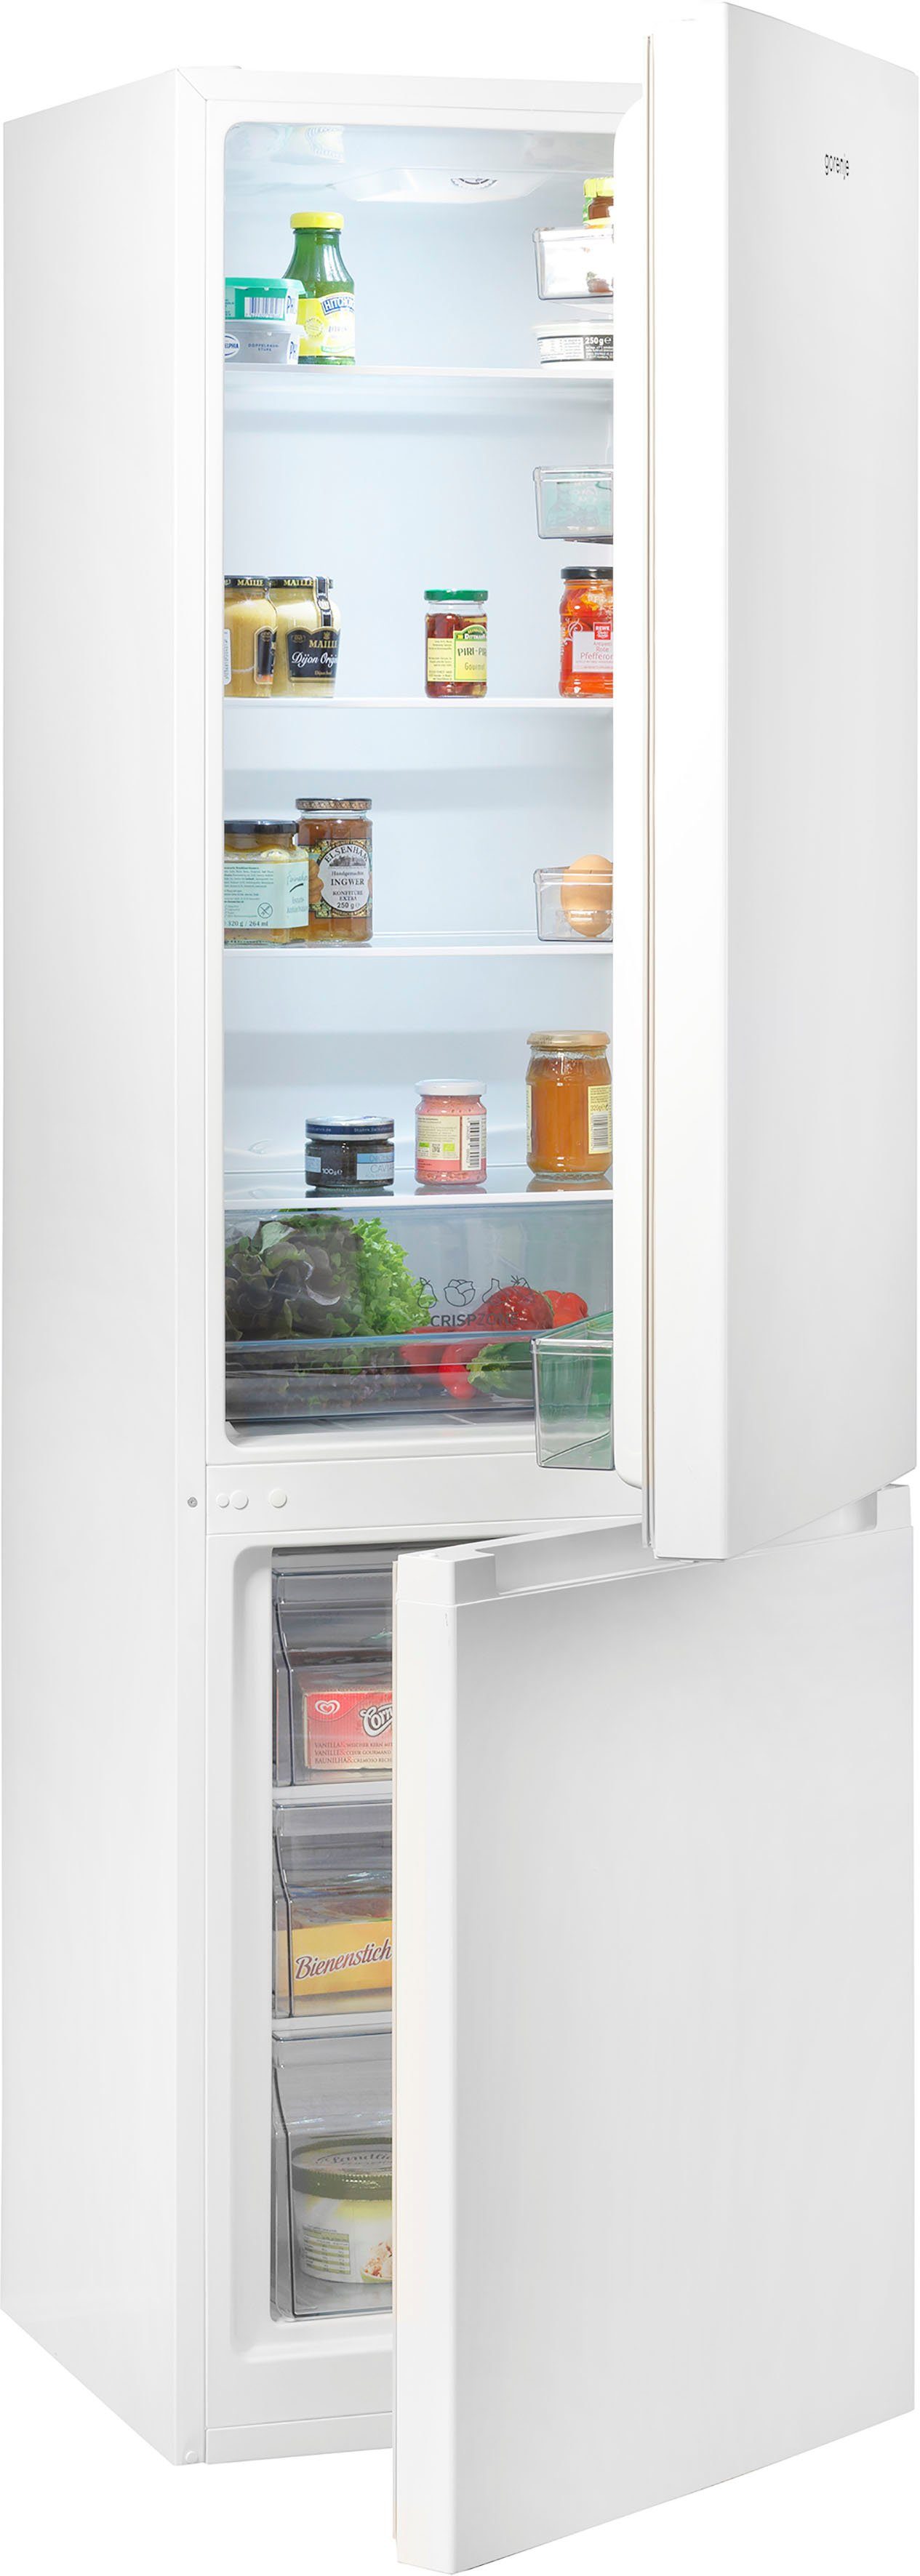 Gorenje Kühlschränke online kaufen | OTTO